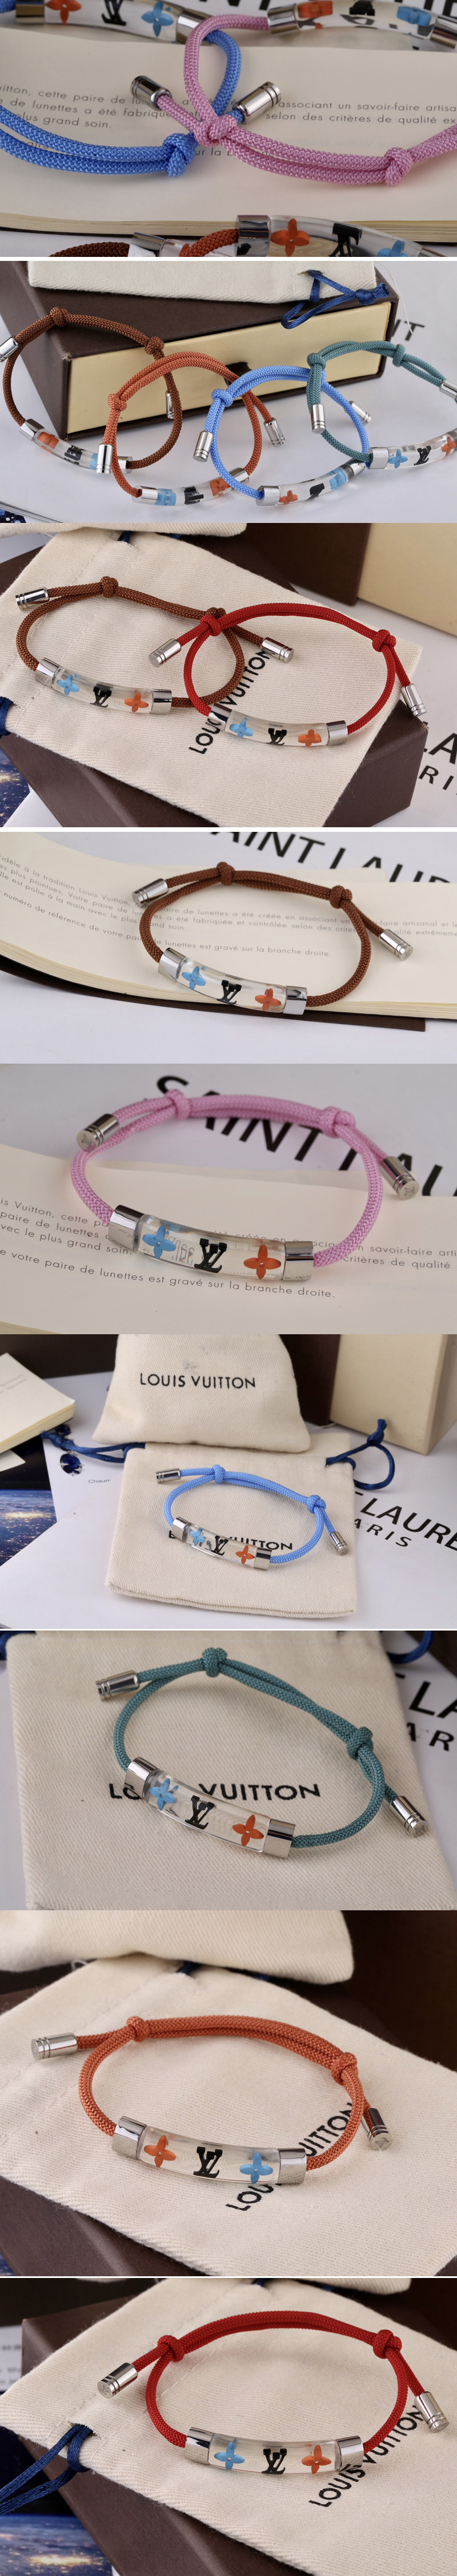 Louis Vuitton M69455 Bracelet LV Inclusion Orange Lv Initial